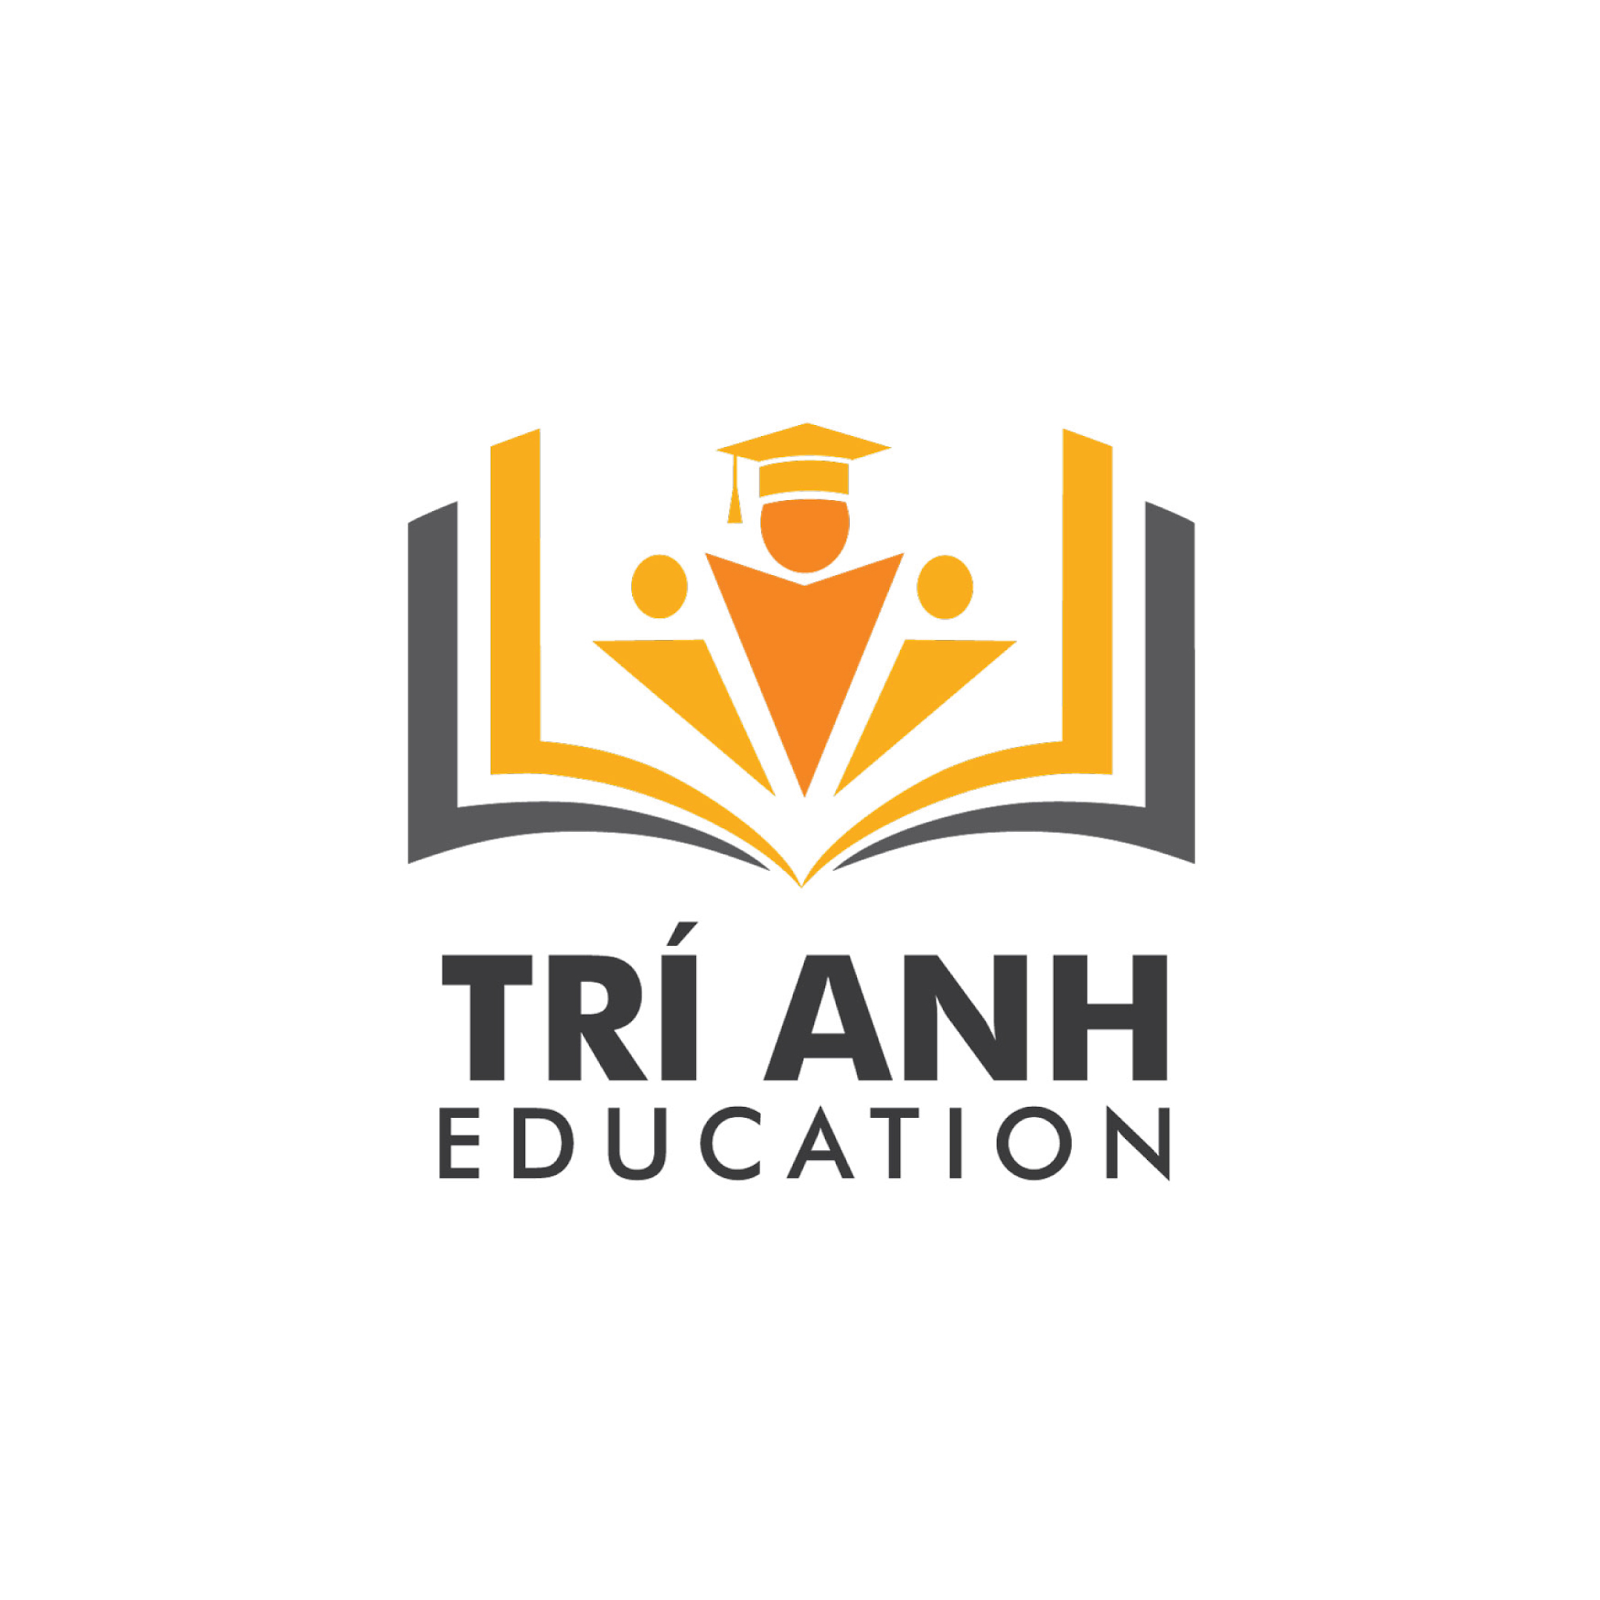 Thiết kế logo trung tâm giáo dục uy tín